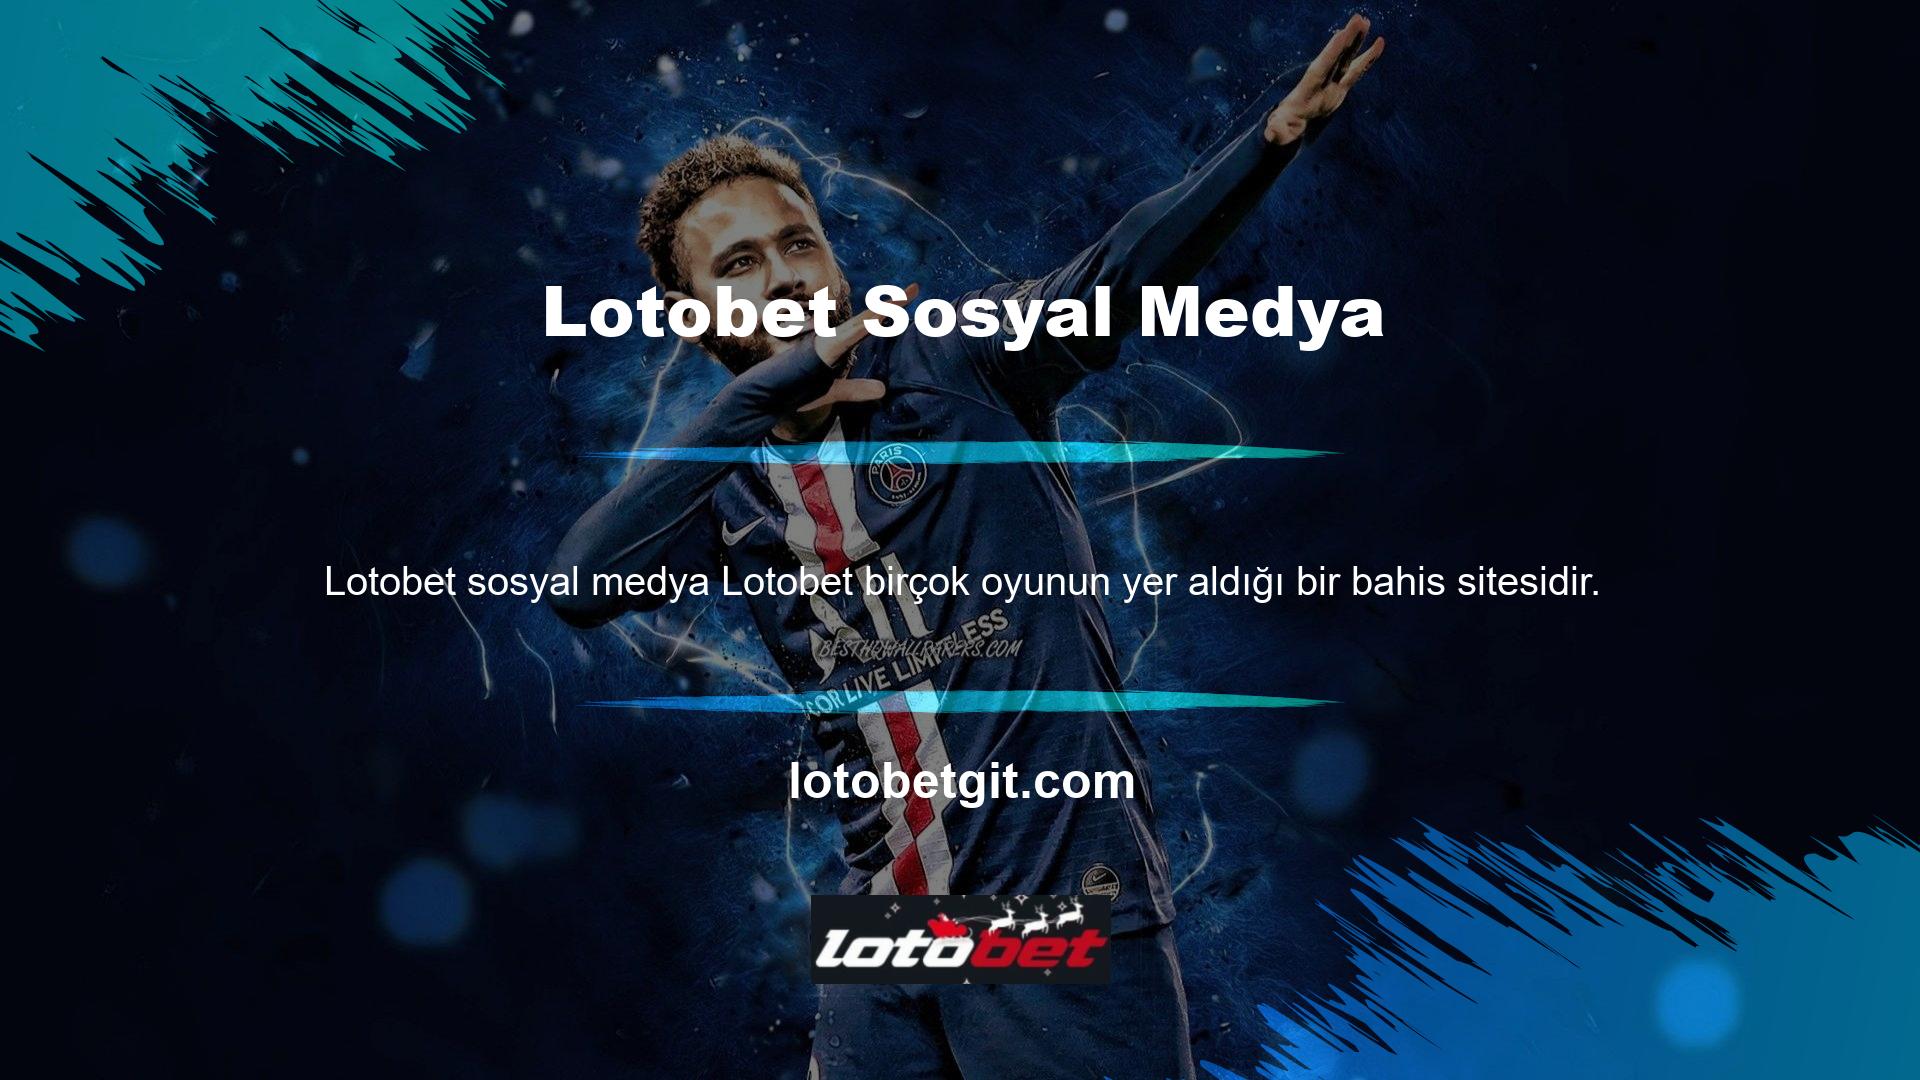 Lotobet sosyal medya hesapları casino meraklılarının memnuniyetine odaklanan yasa dışı bir casino sitesidir